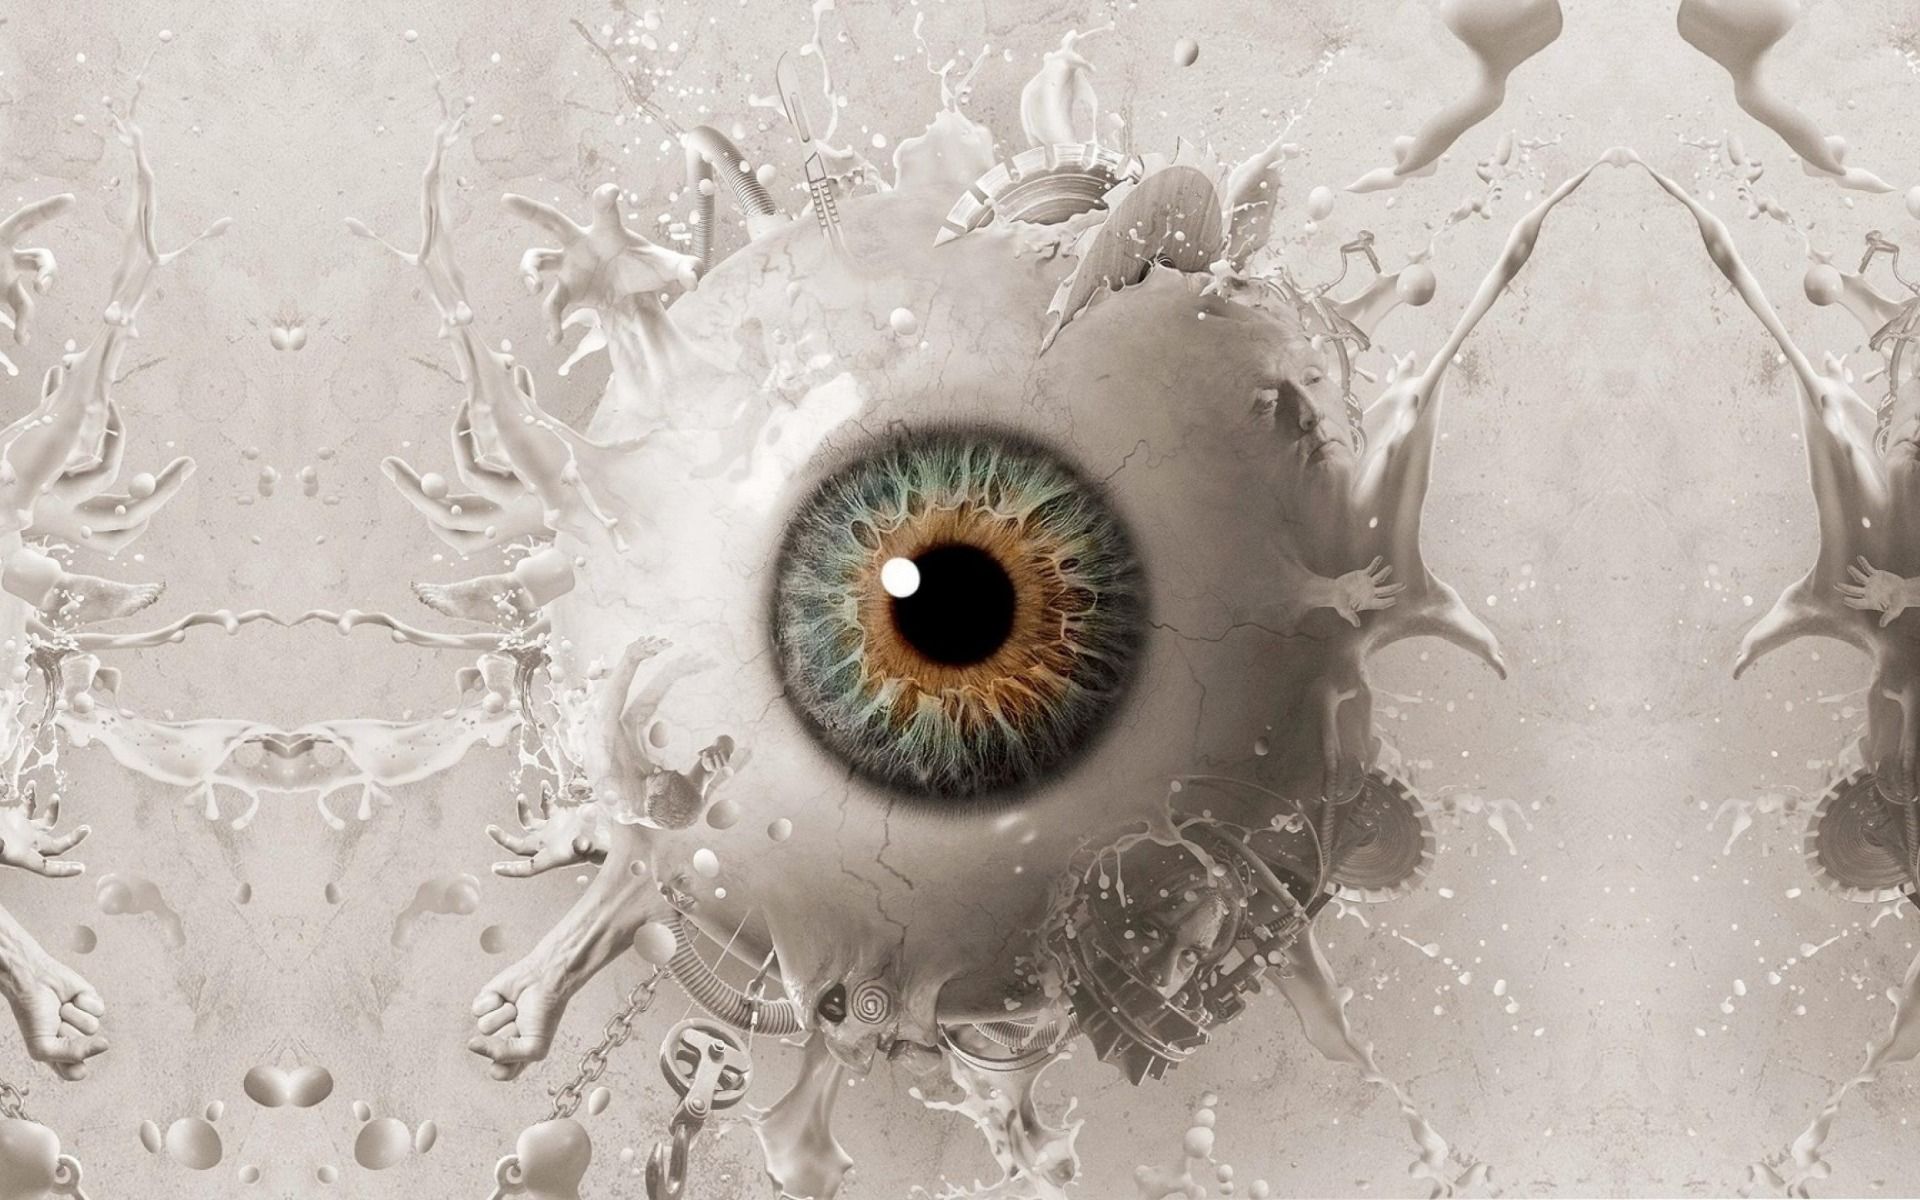 Download wallpaper Eye, 3D eye, human eye, art, vision concepts